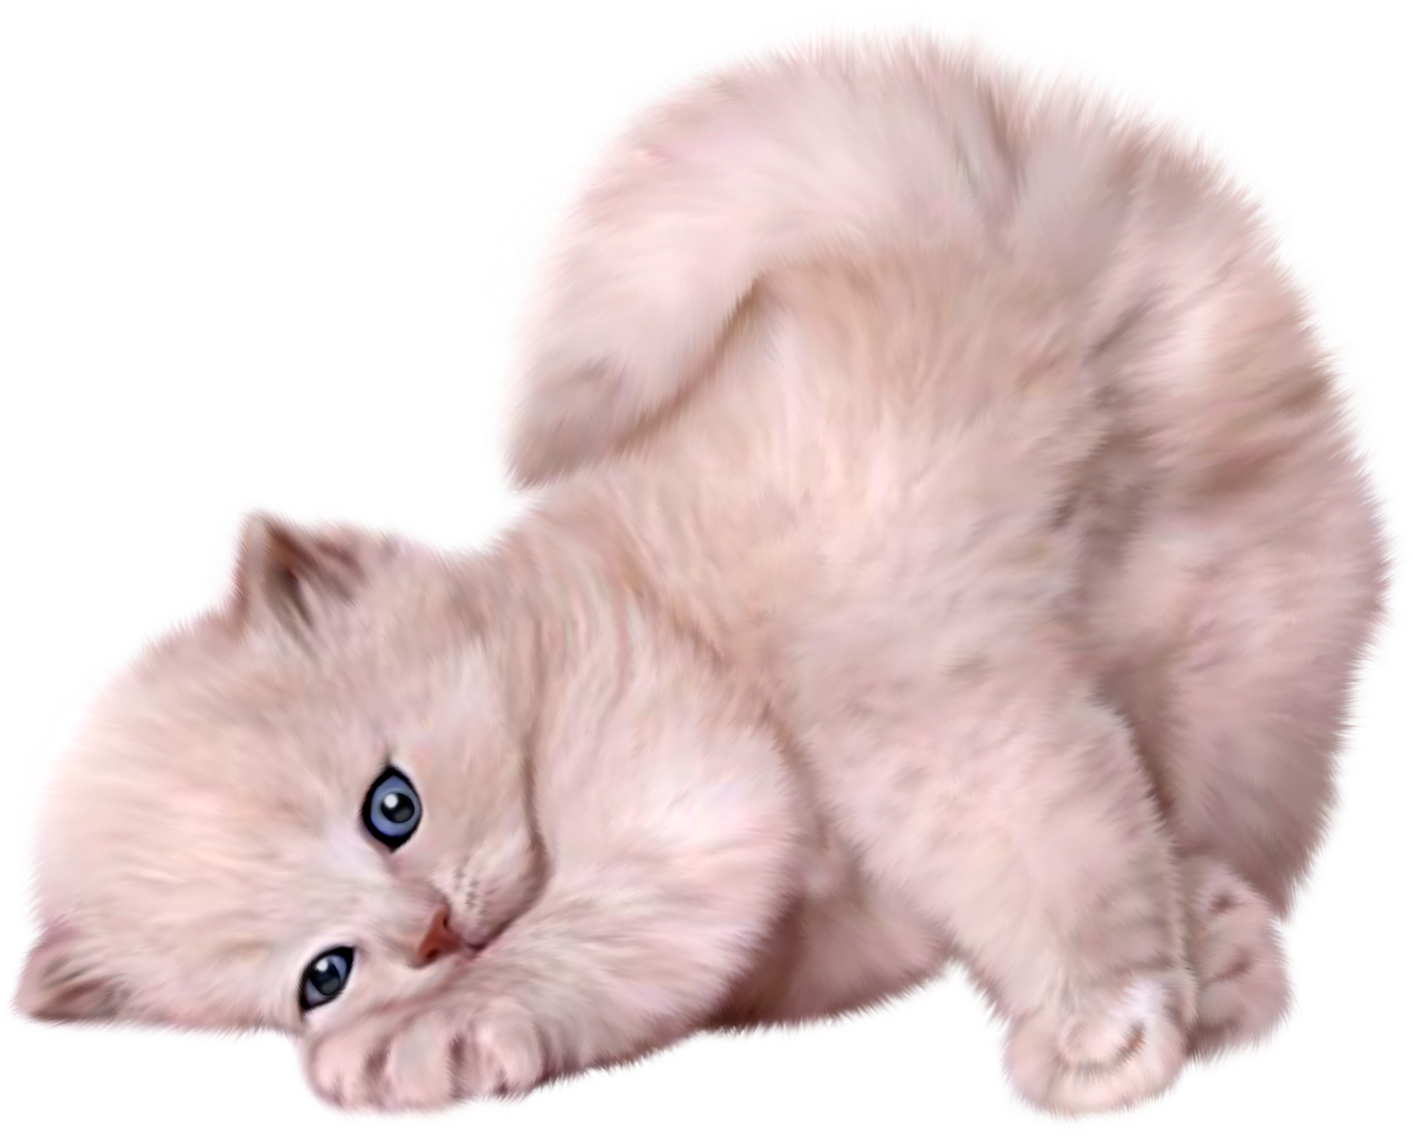 A White Kitten Lying Down